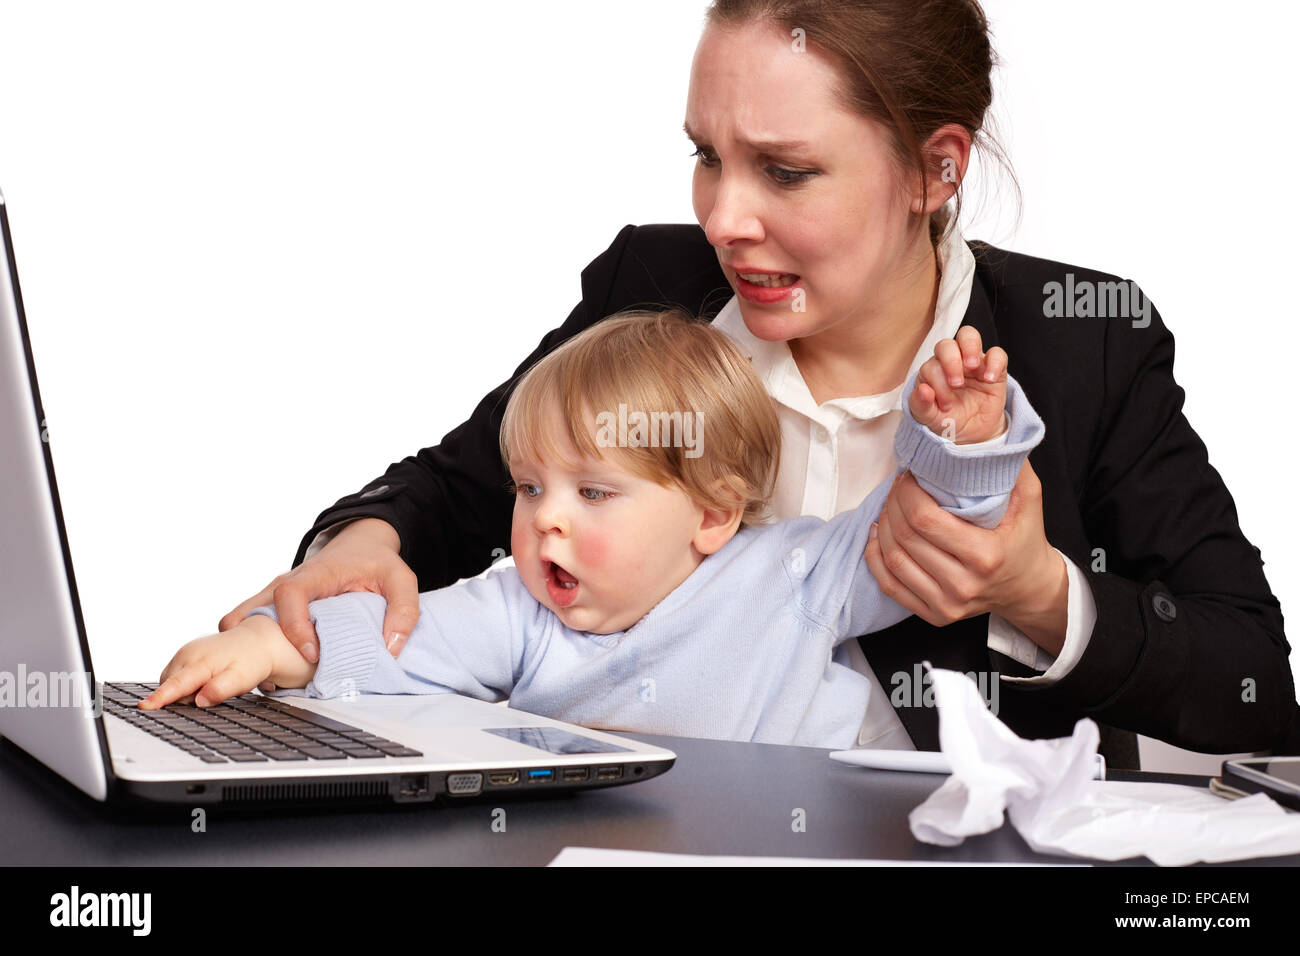 La madre y el niño en el trabajo Foto de stock